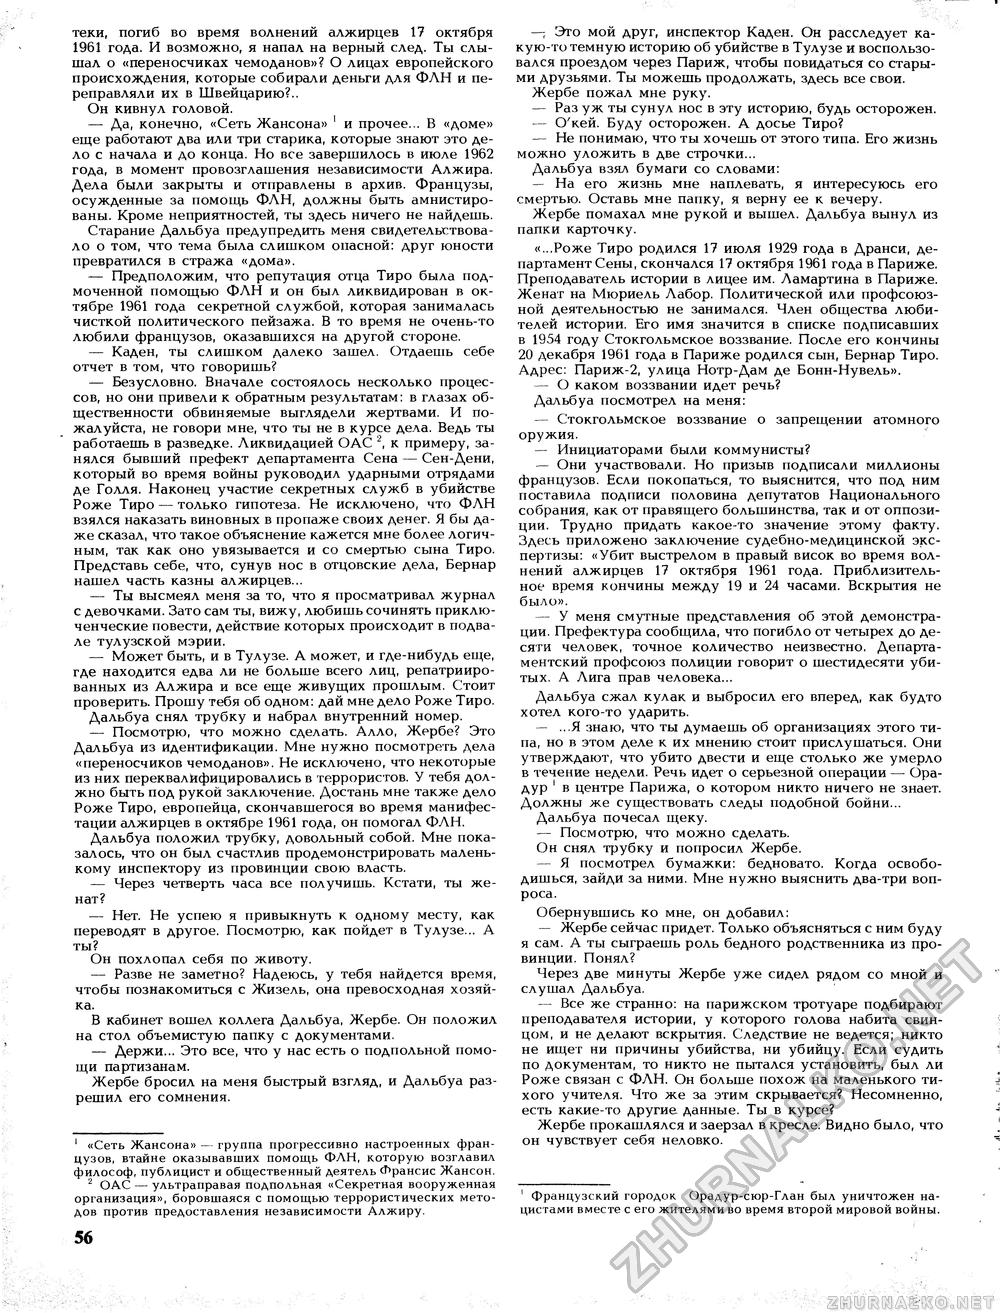 Вокруг света 1989-02, страница 58